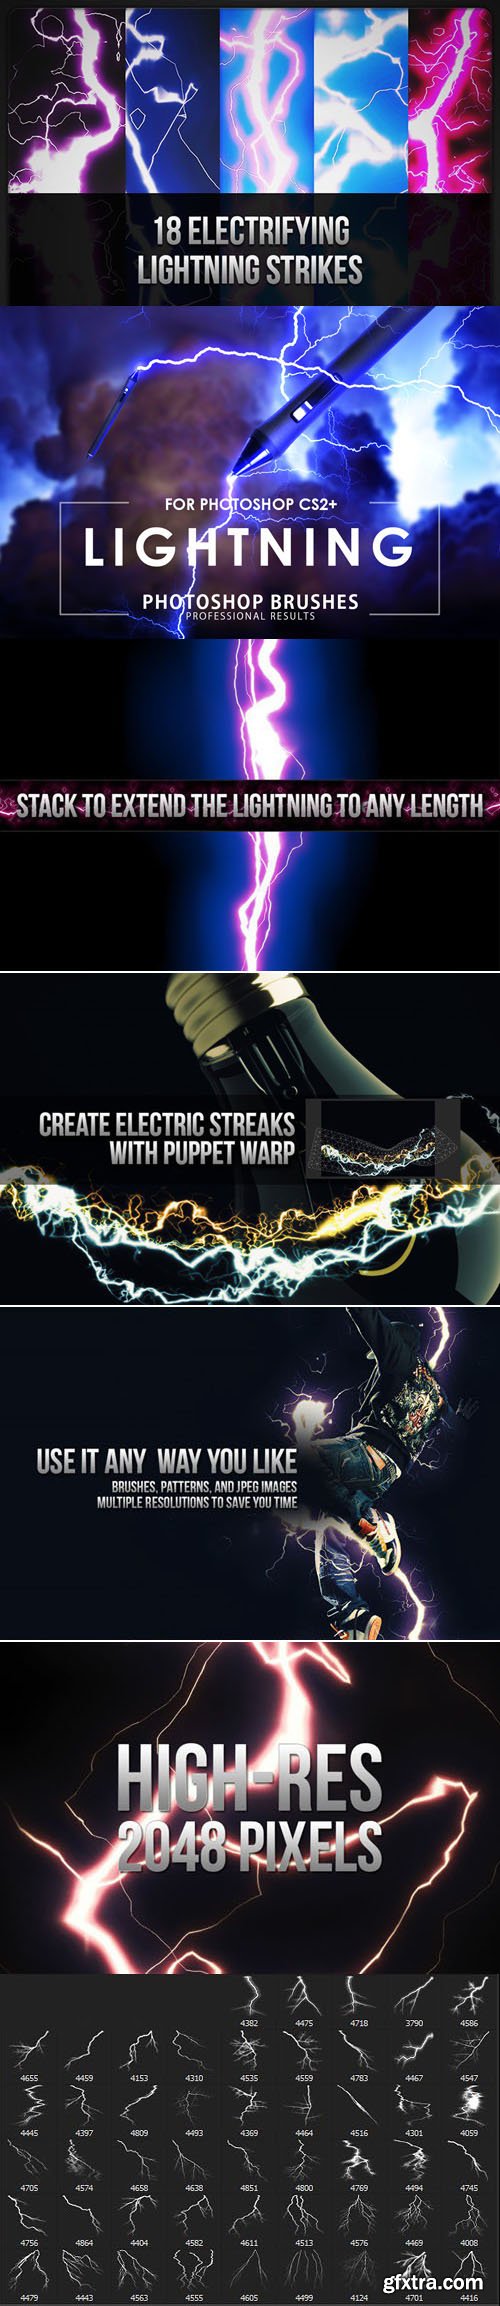 20 Electrifying Lightning Strikes Brushes for Photoshop